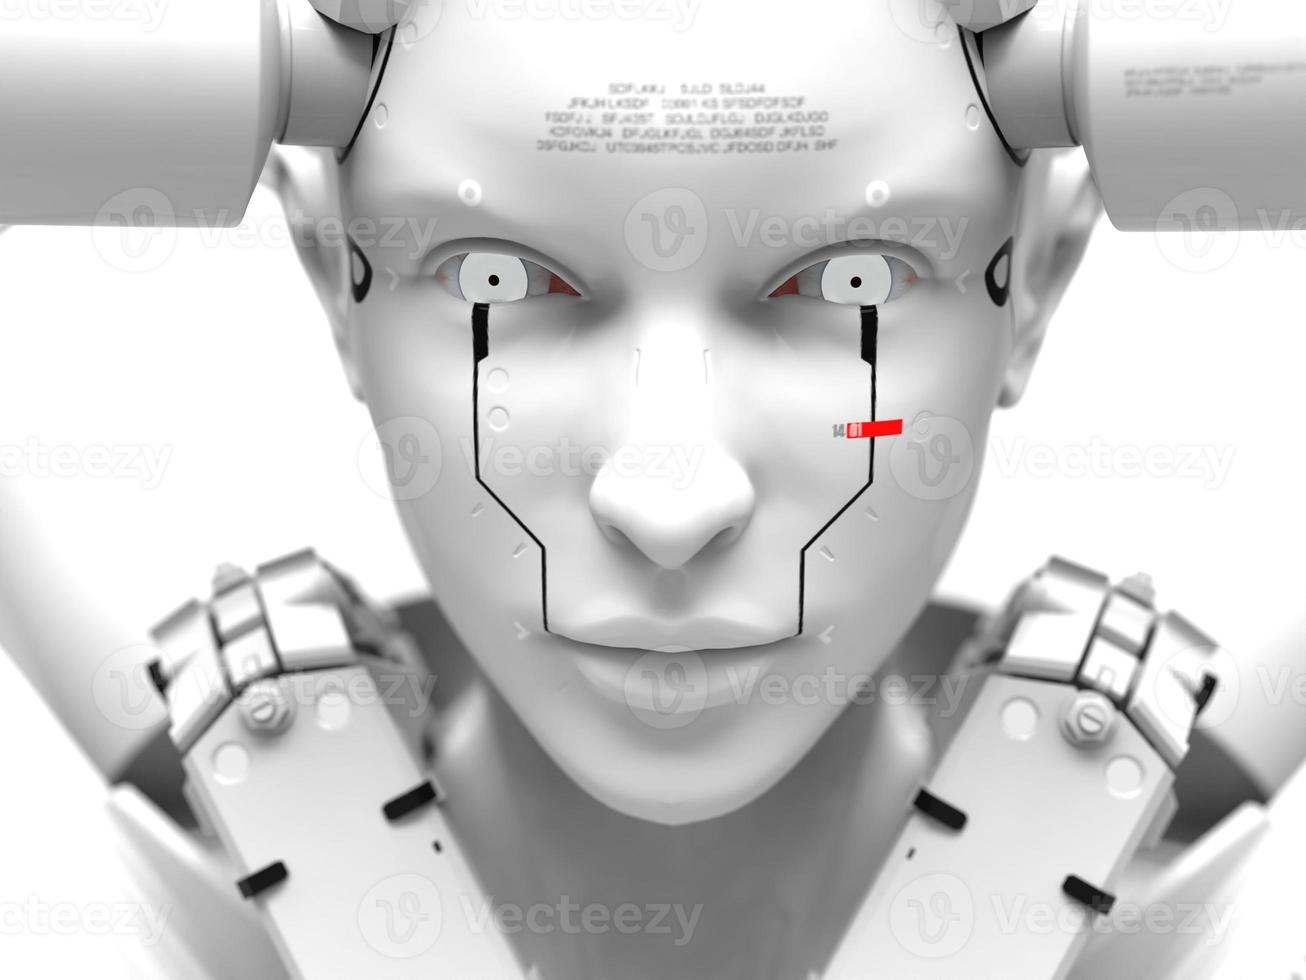 gente del futuro. Ilustración 3D sobre el tema de los robots. industria militar y juegos foto